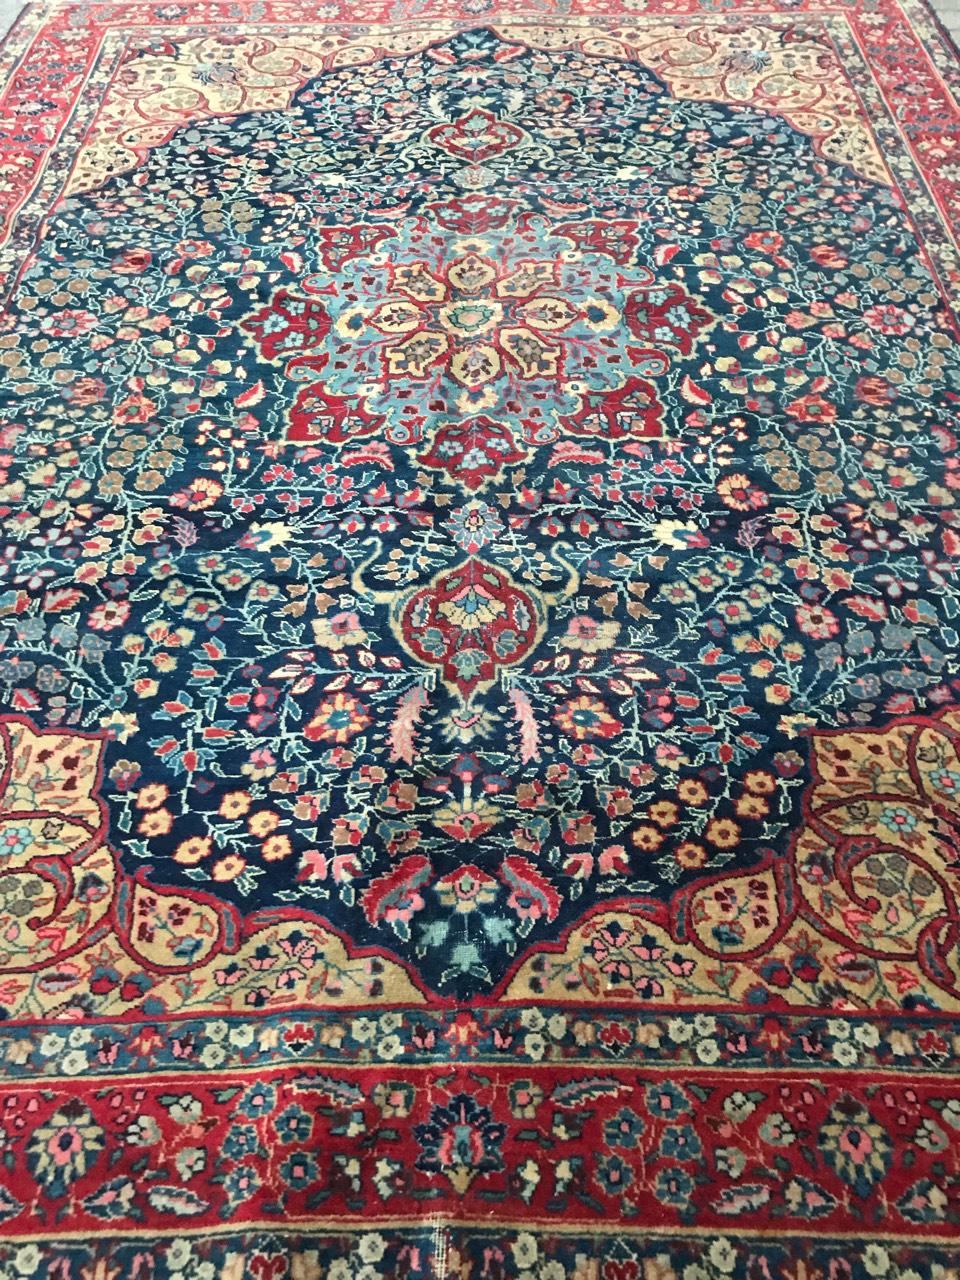 Bobyrug’s Nice Large Antique Tabriz Rug For Sale 6